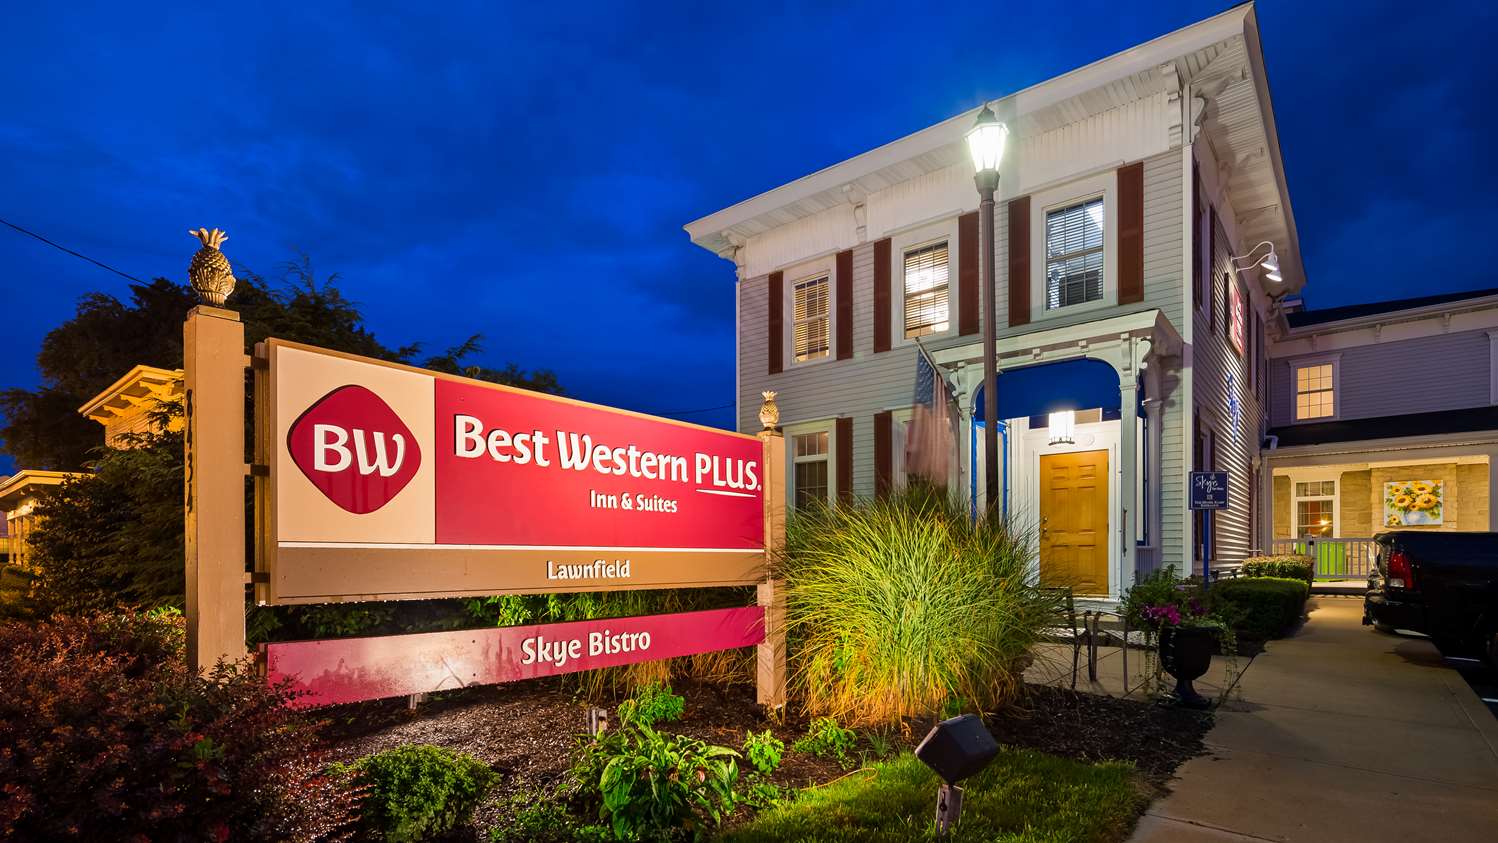 Mentor Hotels Best Western Plus Lawnfield Inn Suites